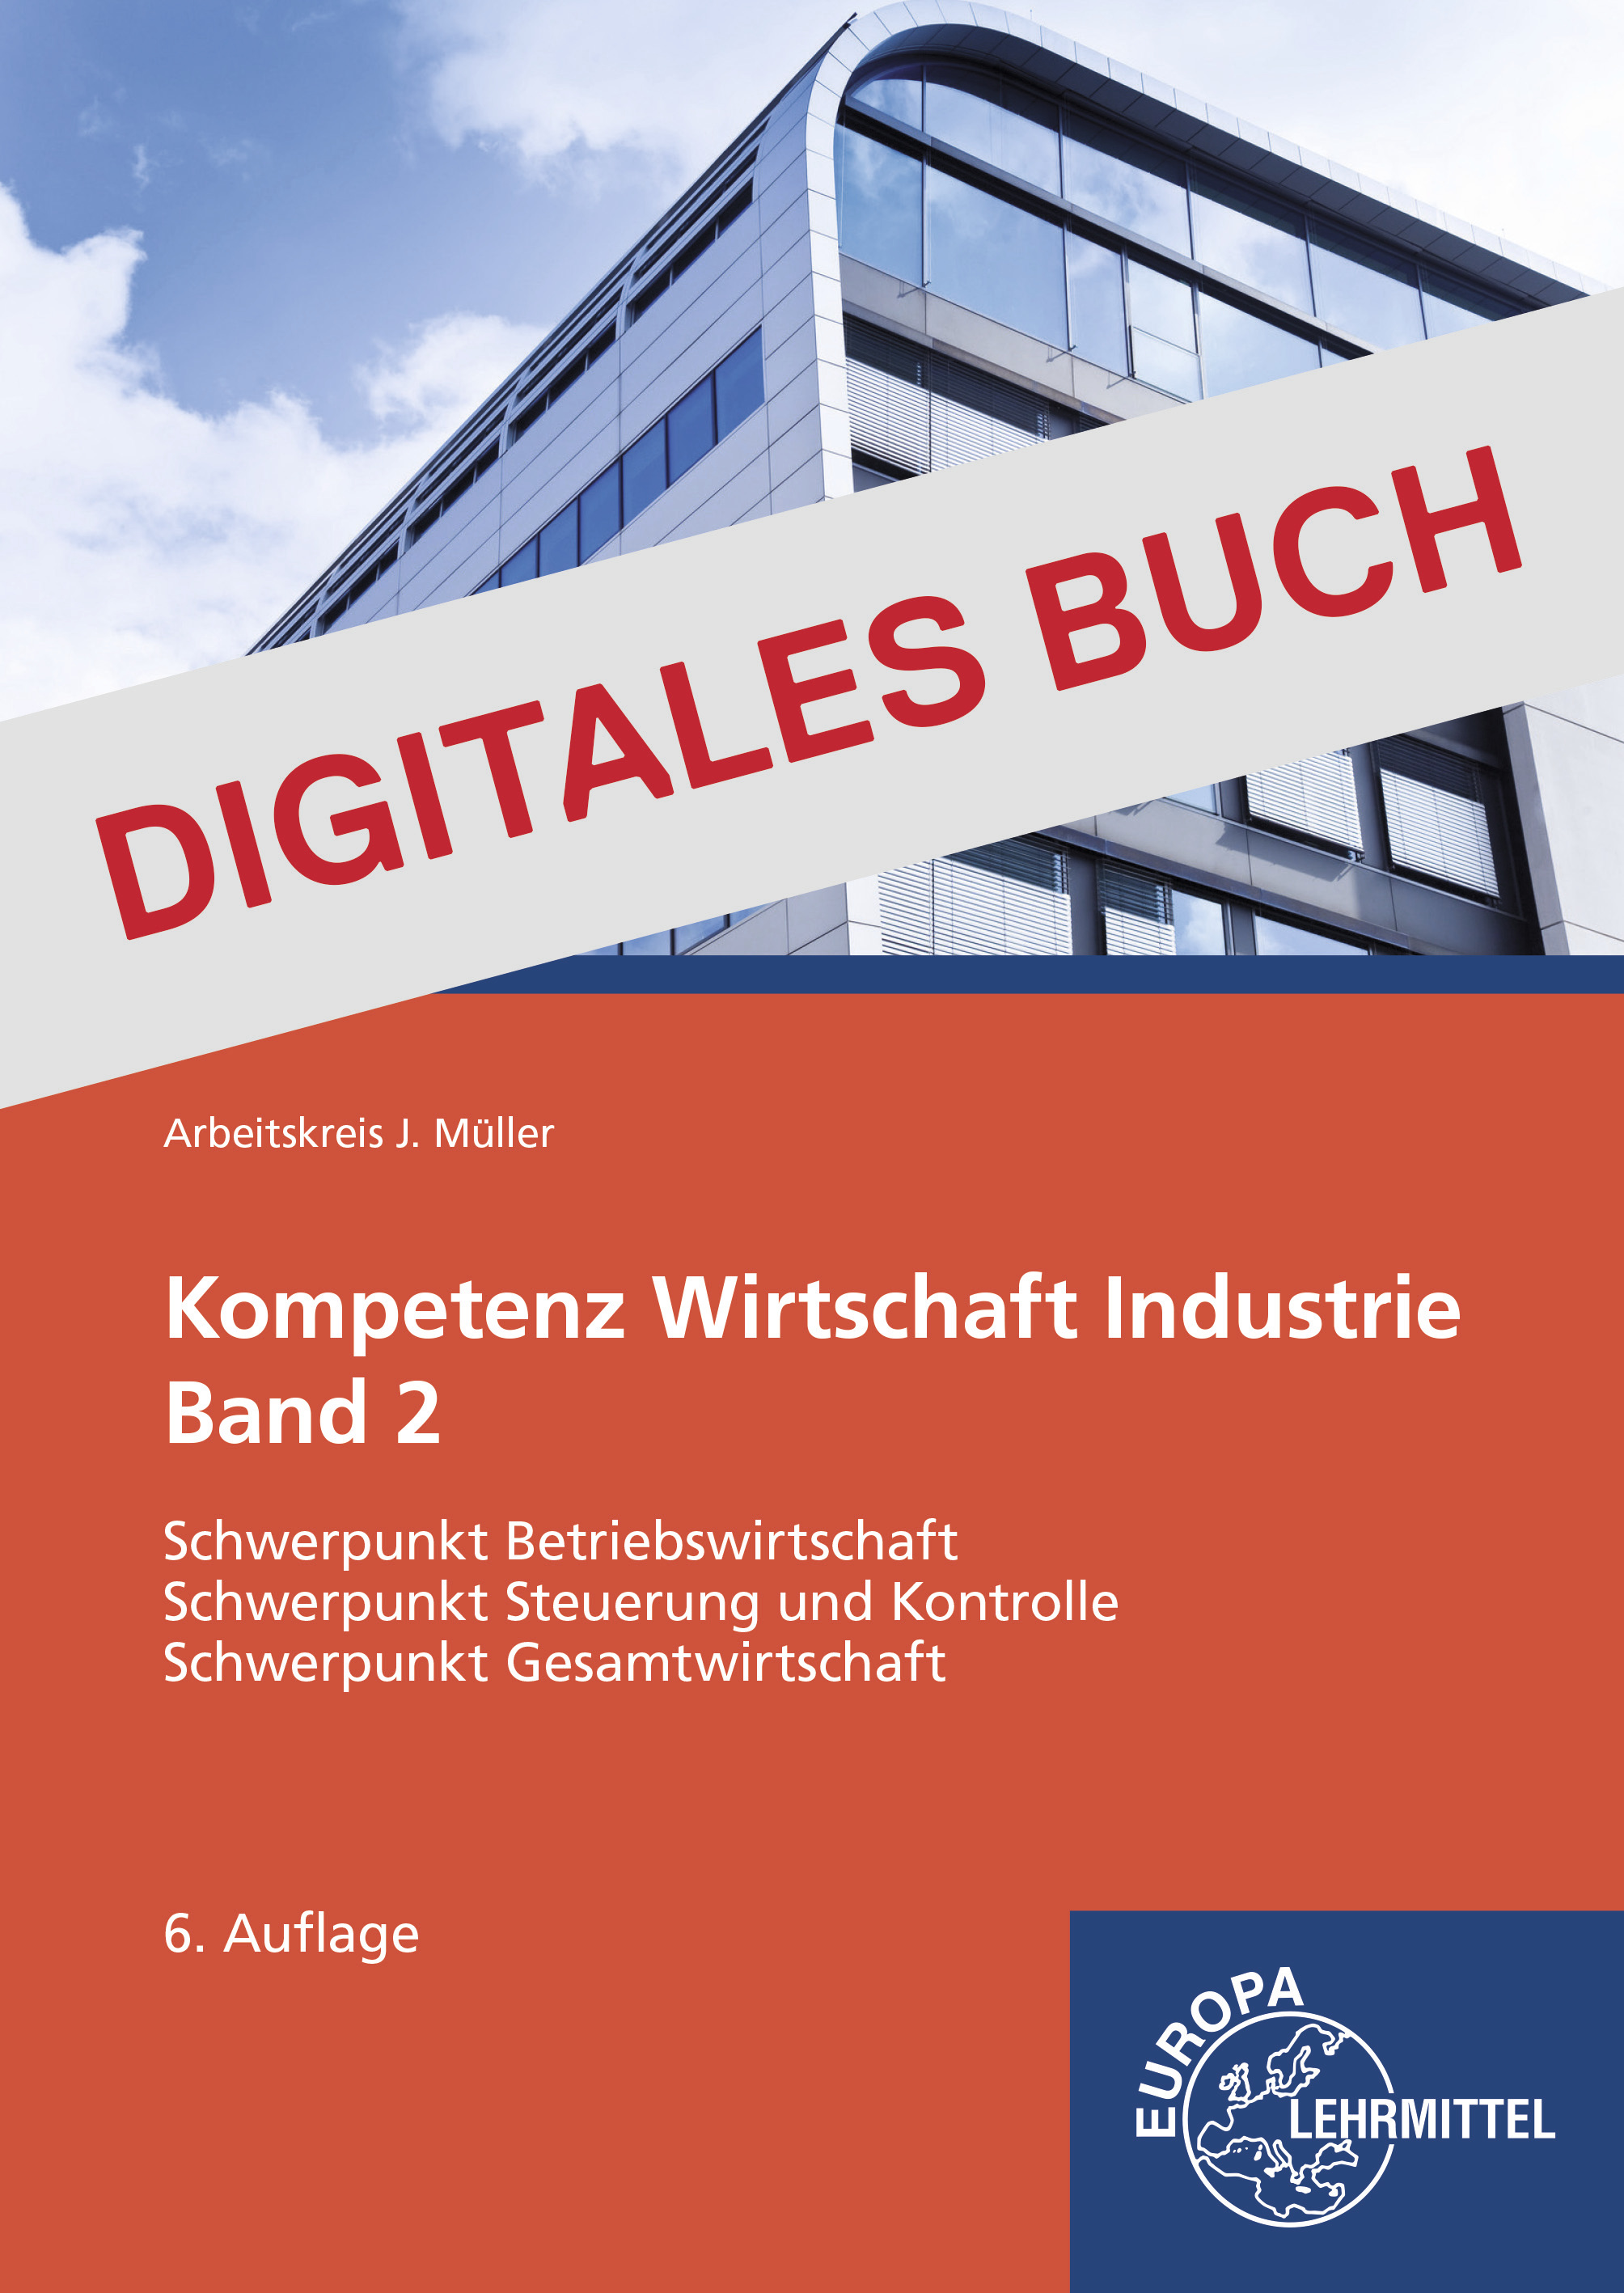 Kompetenz Wirtschaft Industrie Band 2 - Digitales Buch